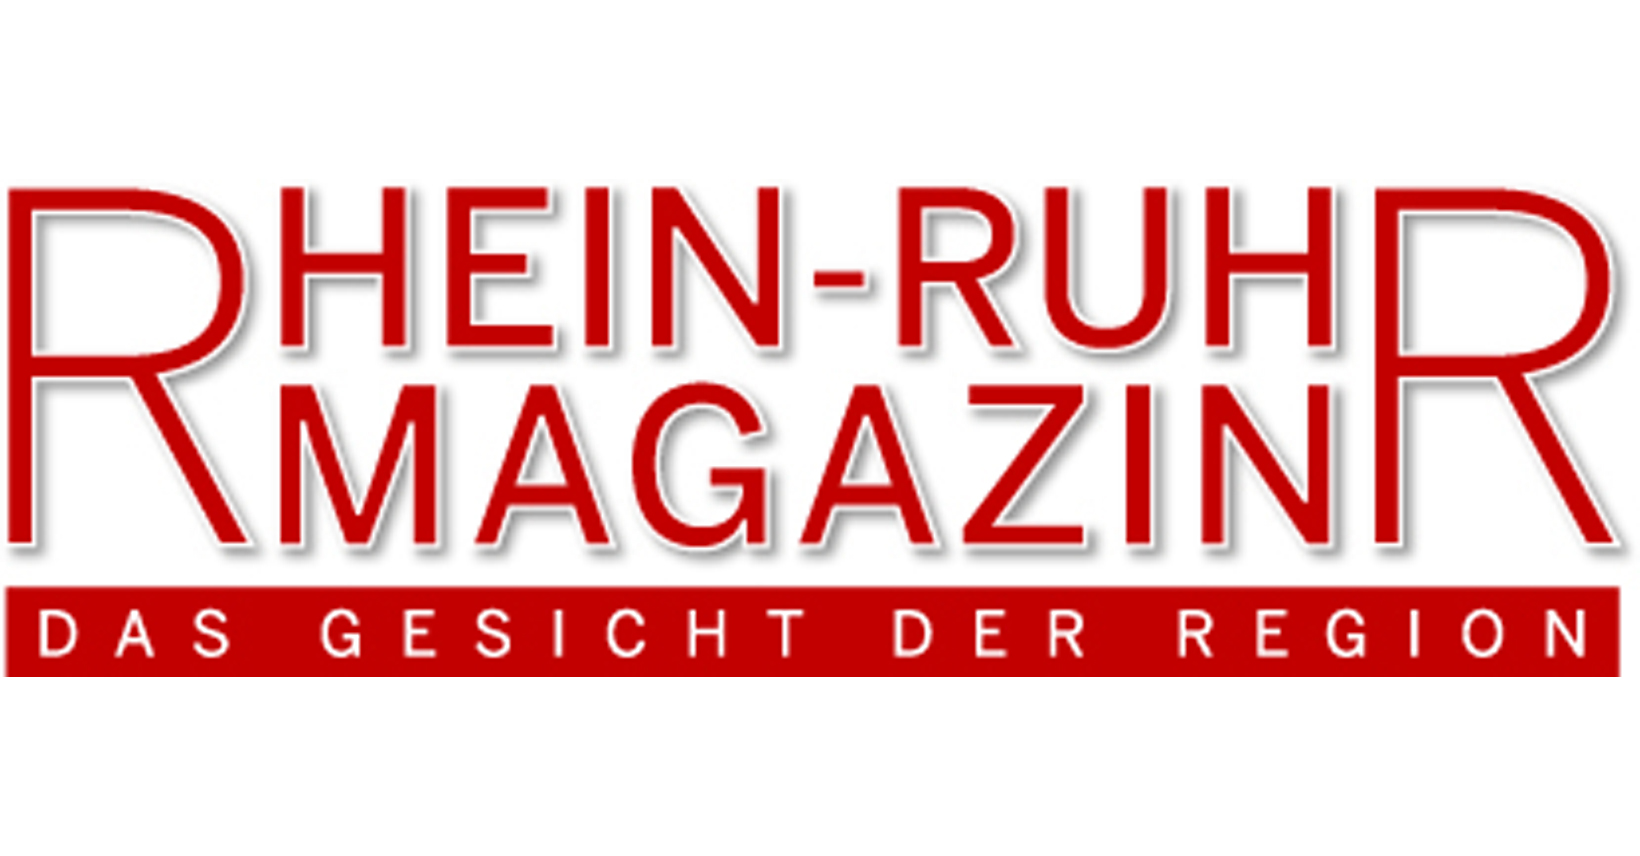 (c) Rhein-ruhr-magazin.de